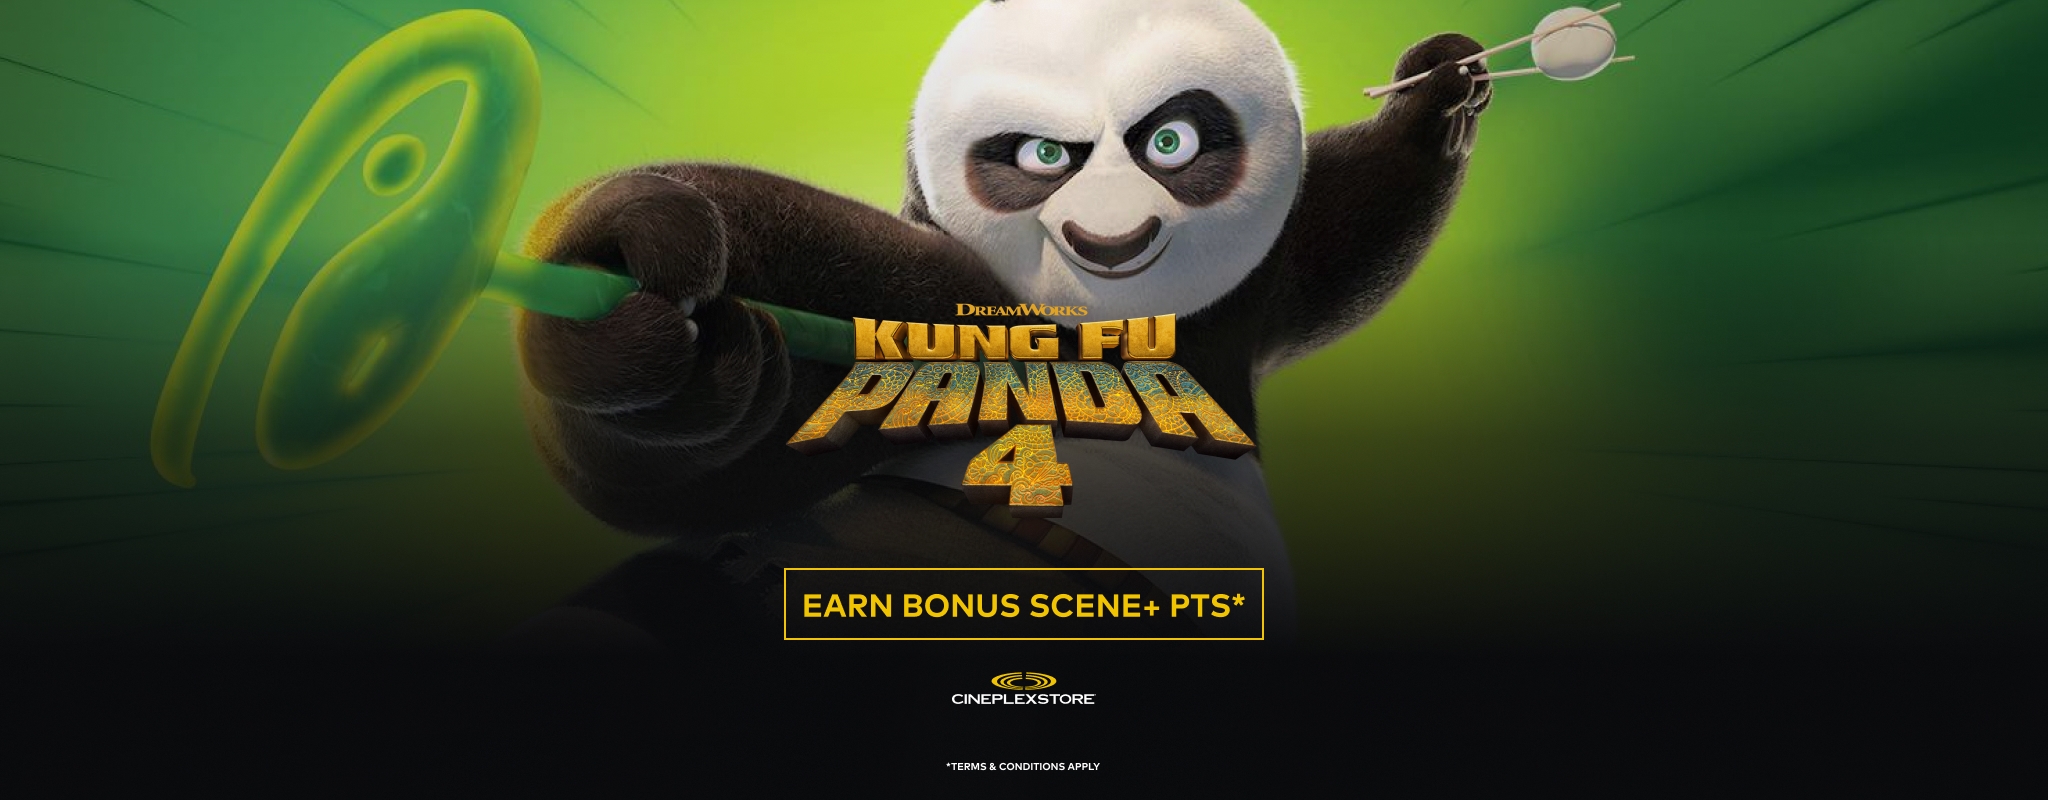 STORE: Kung Fu Panda 4 Bonus Offer